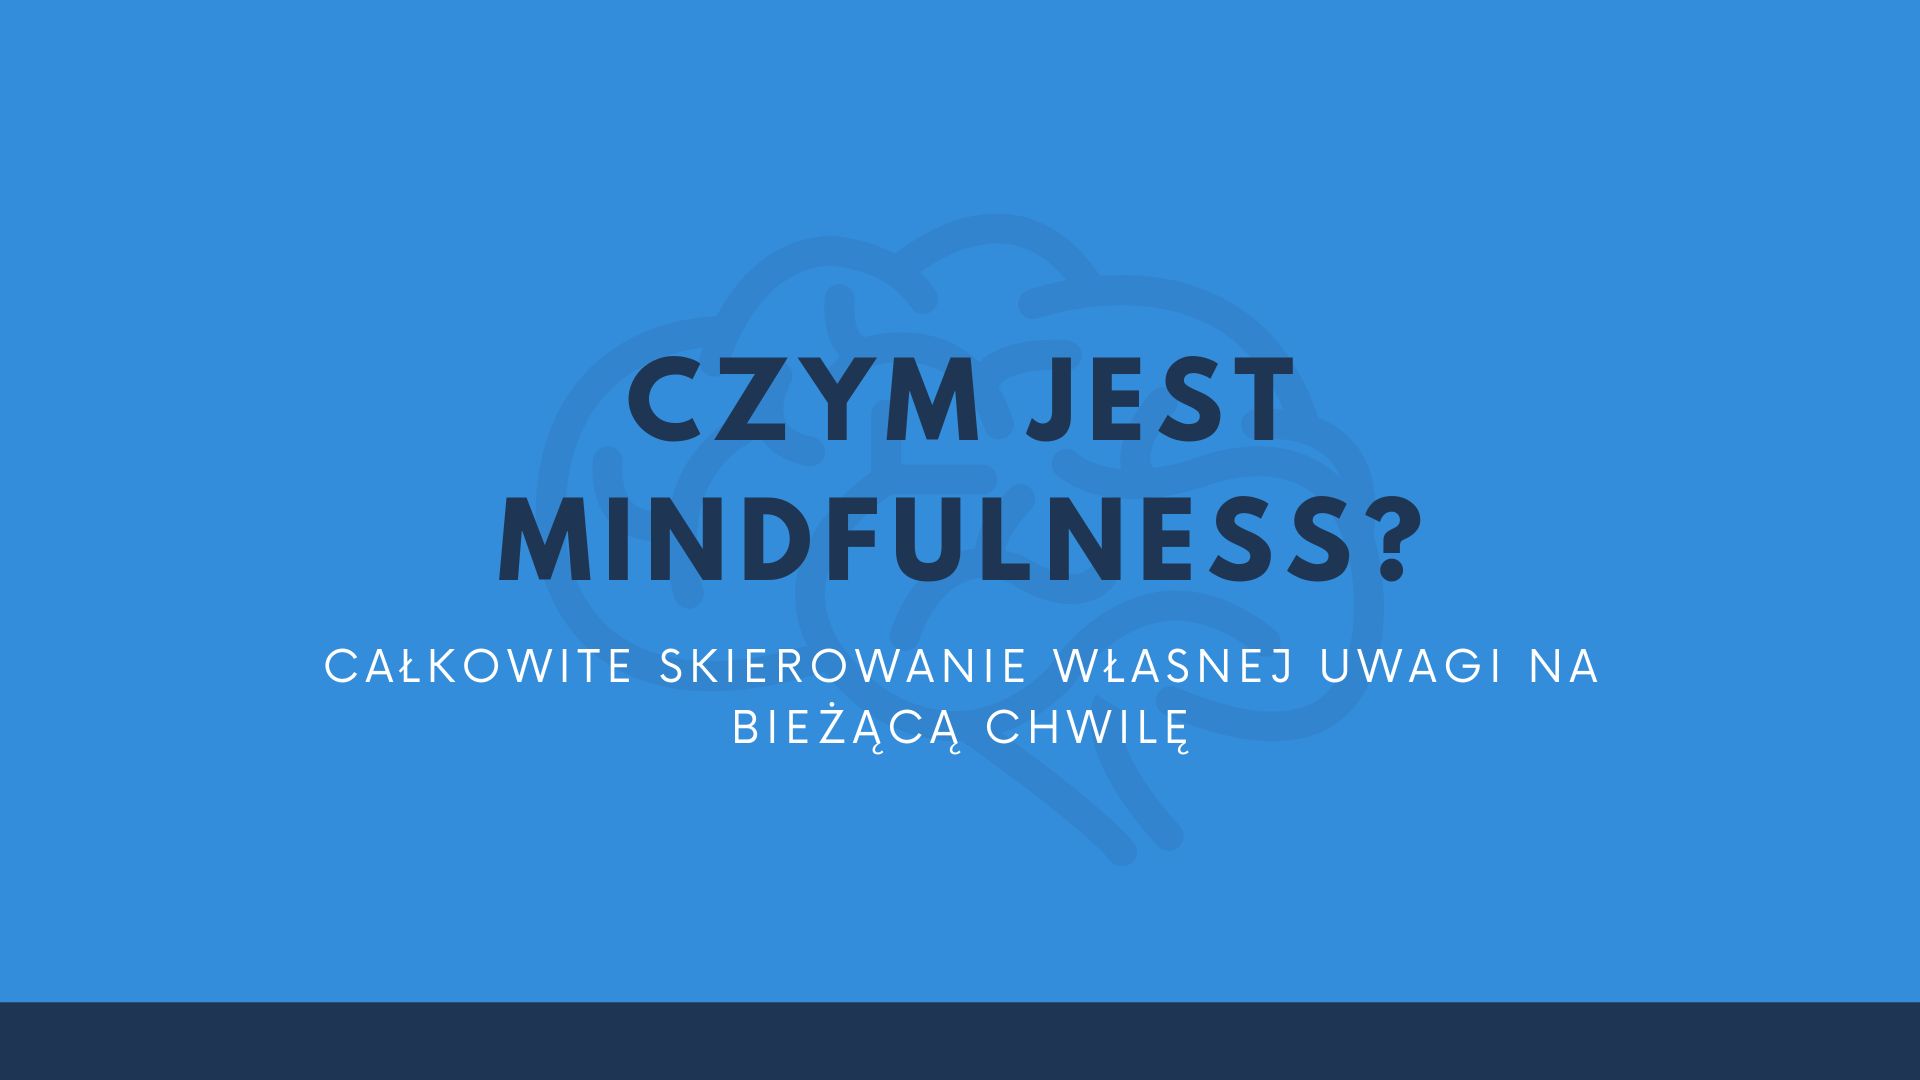 Czym jest mindfulness? Całkowite skierowanie własnej uwagi na bieżącą chwilę.